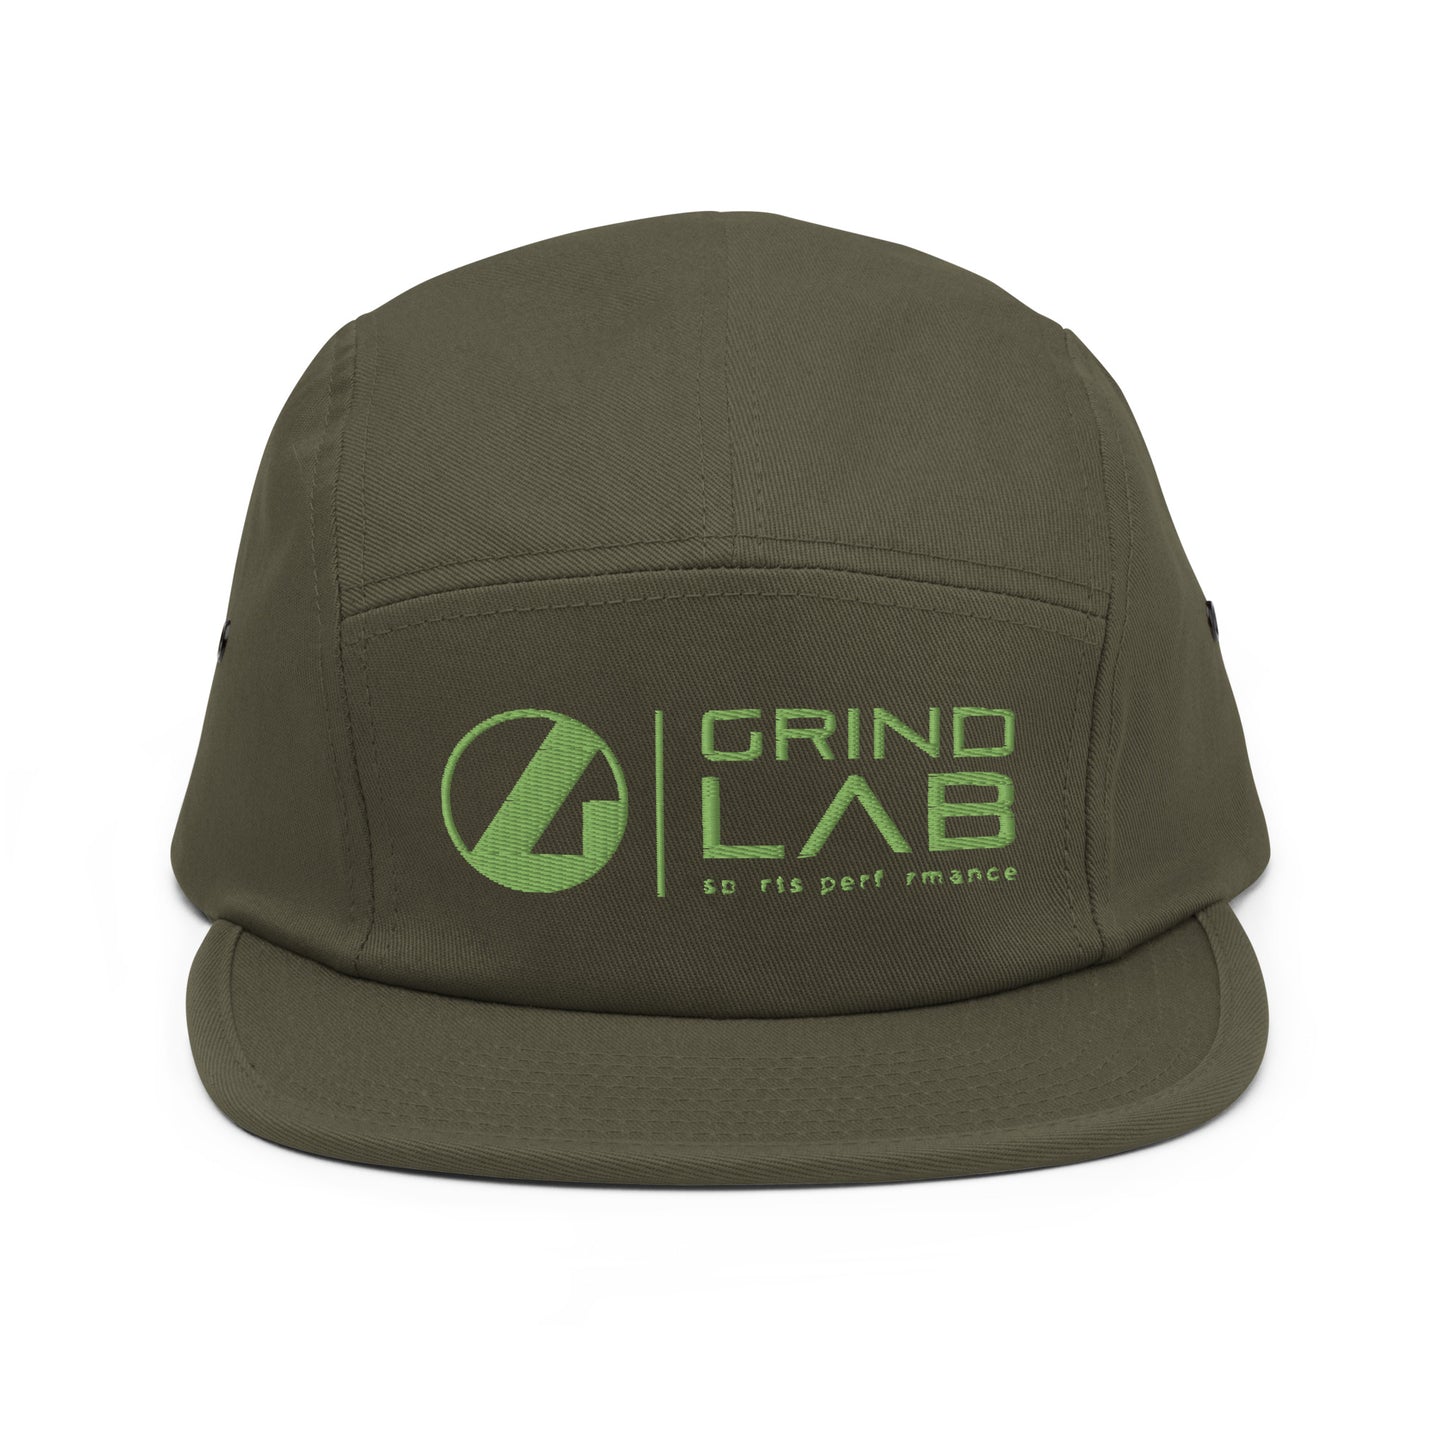 Grind Lab 5 Panel LOGO Hat